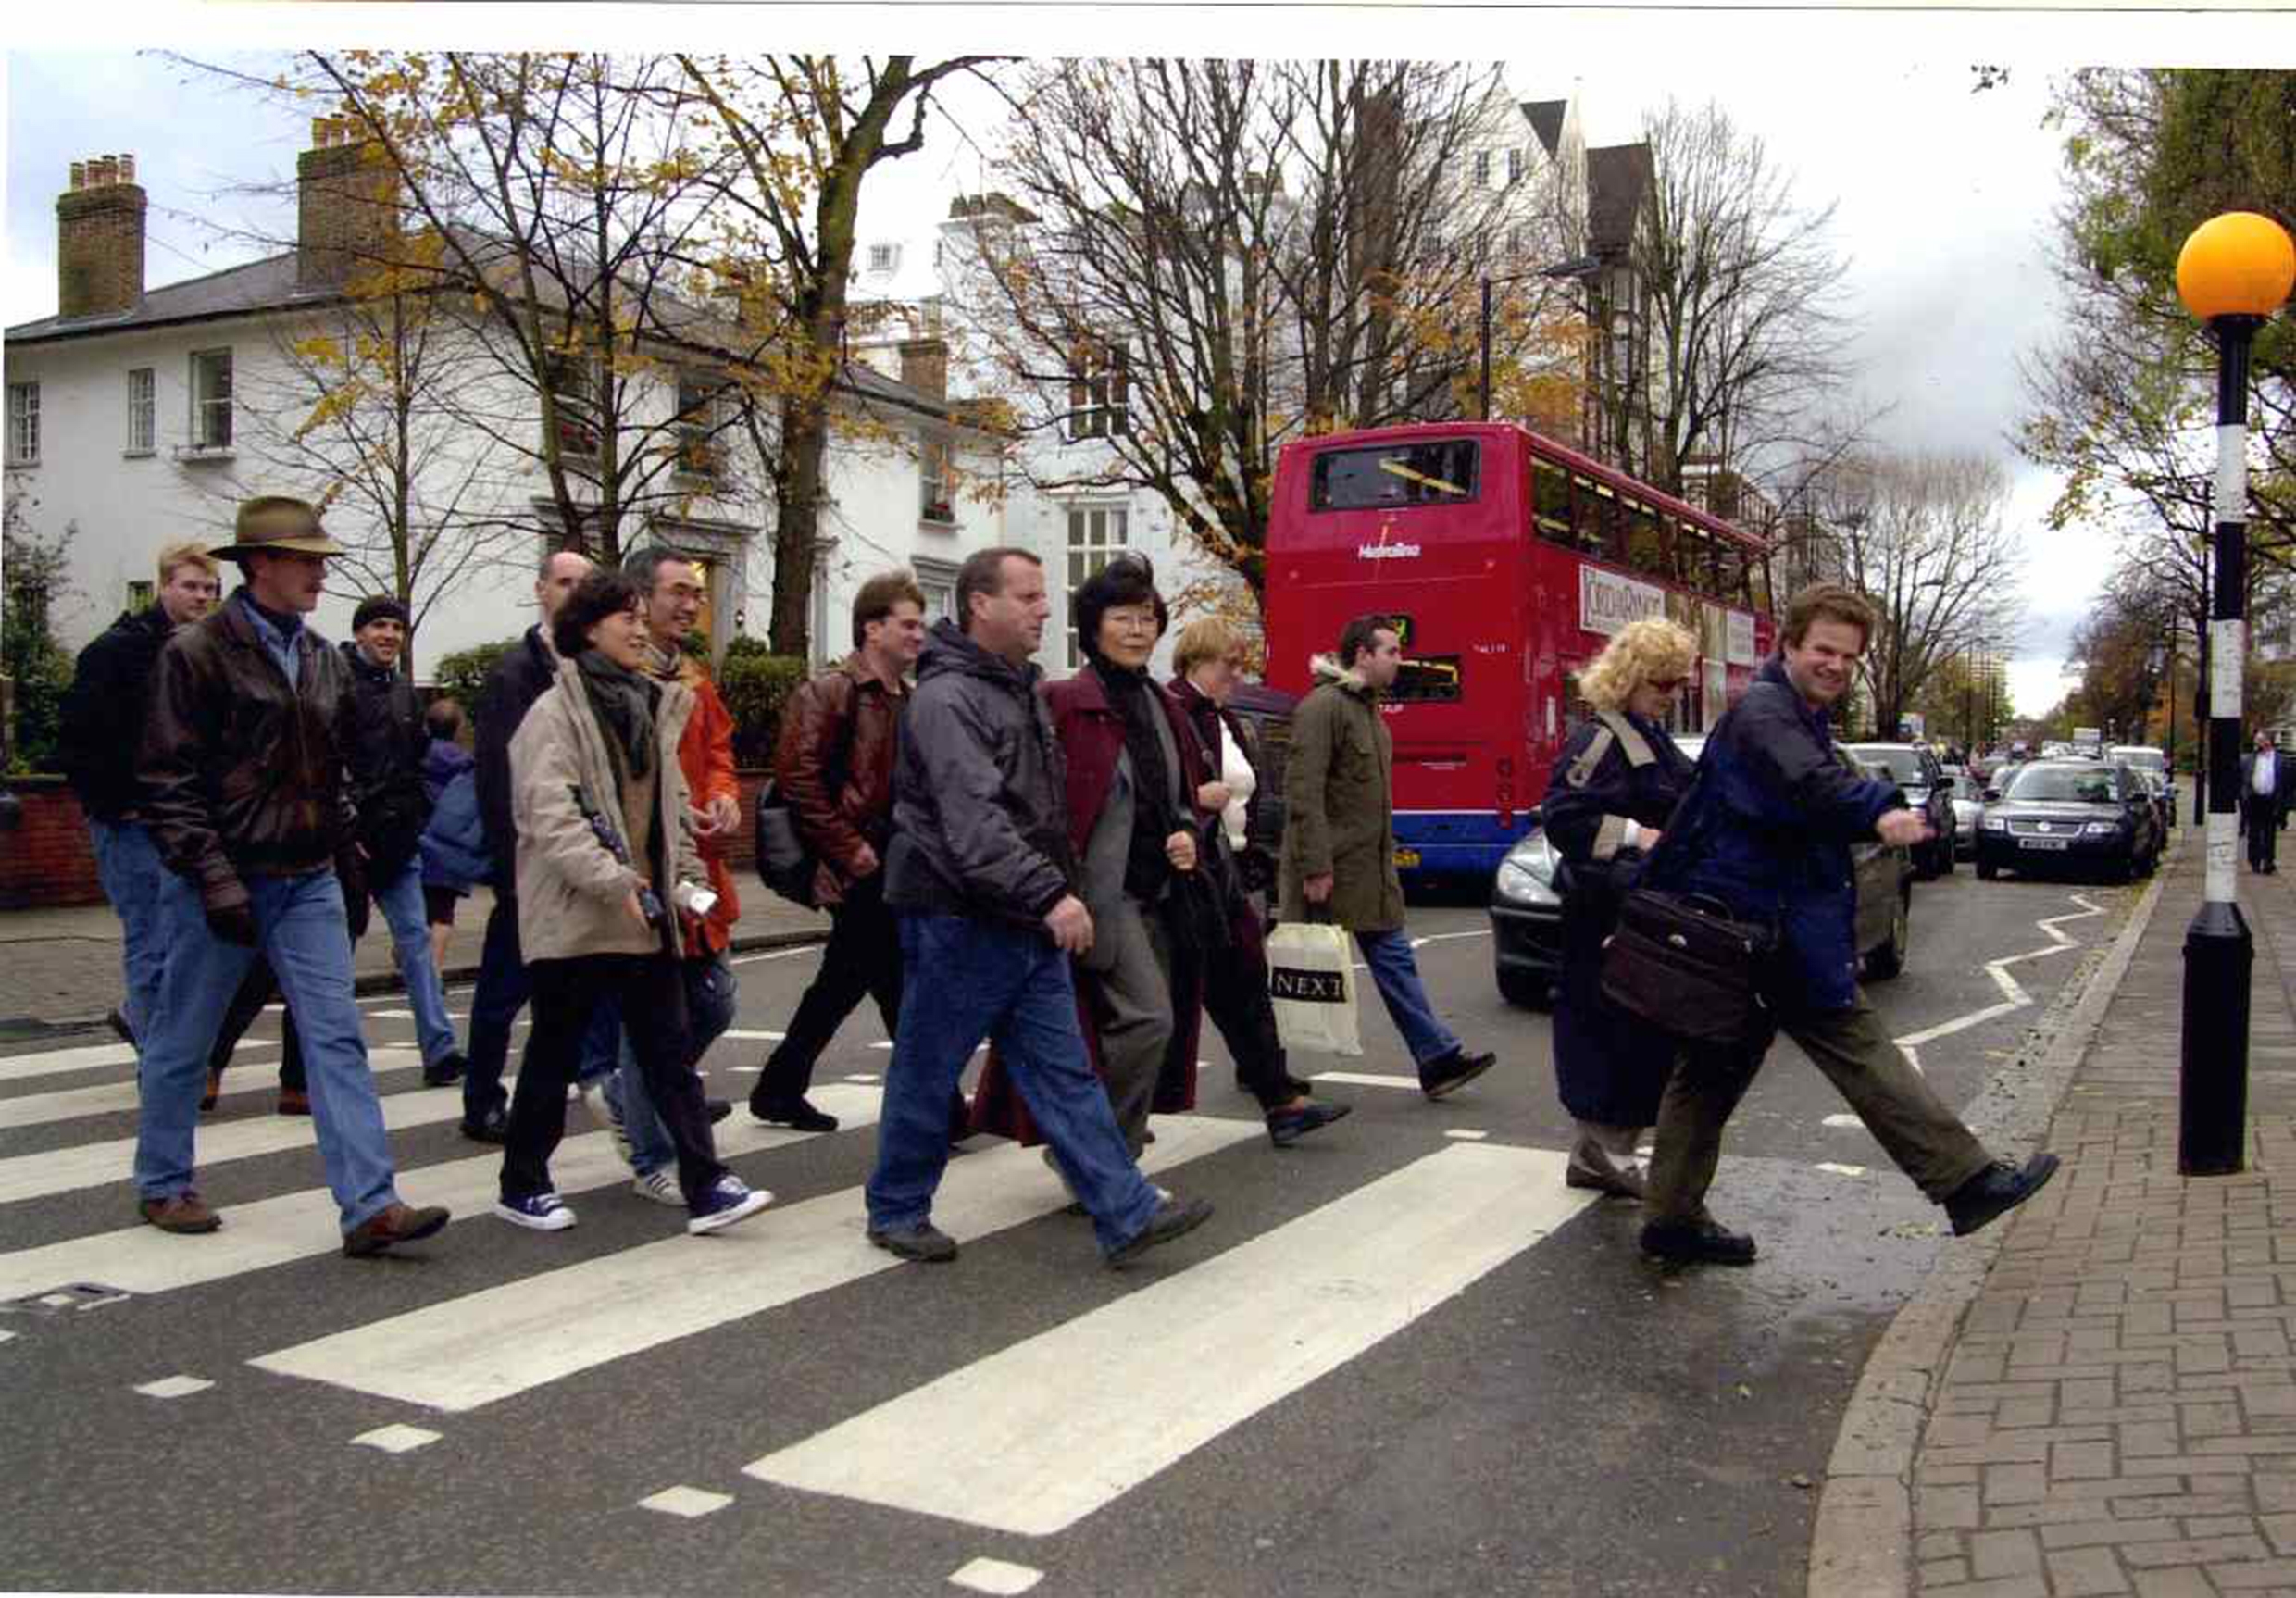 London Beatles Walks crossing Abbey Road